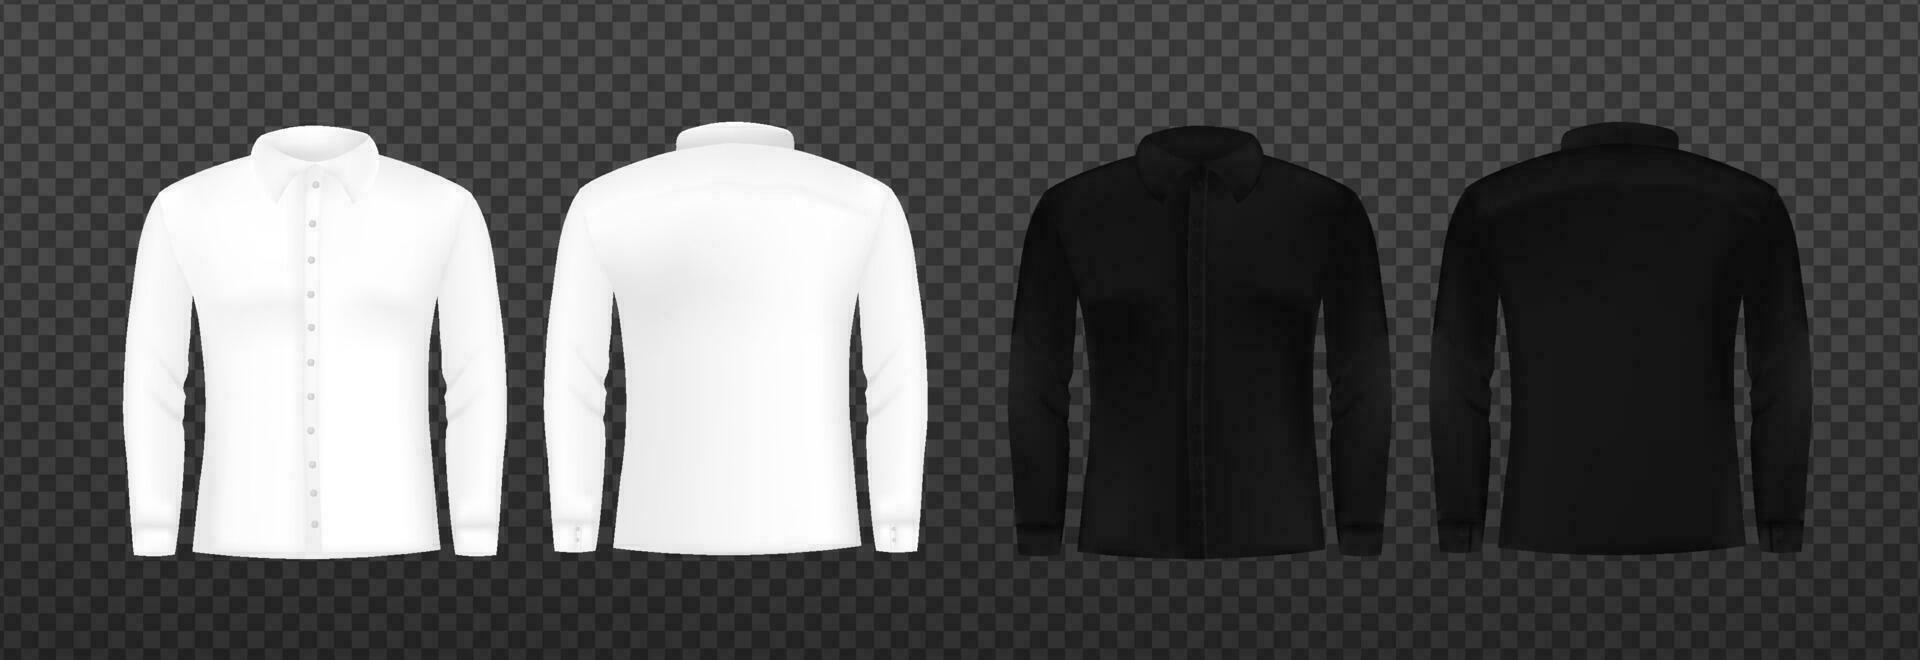 blanco y negro camisa largo manga modelo. camisa Bosquejo blanco vector